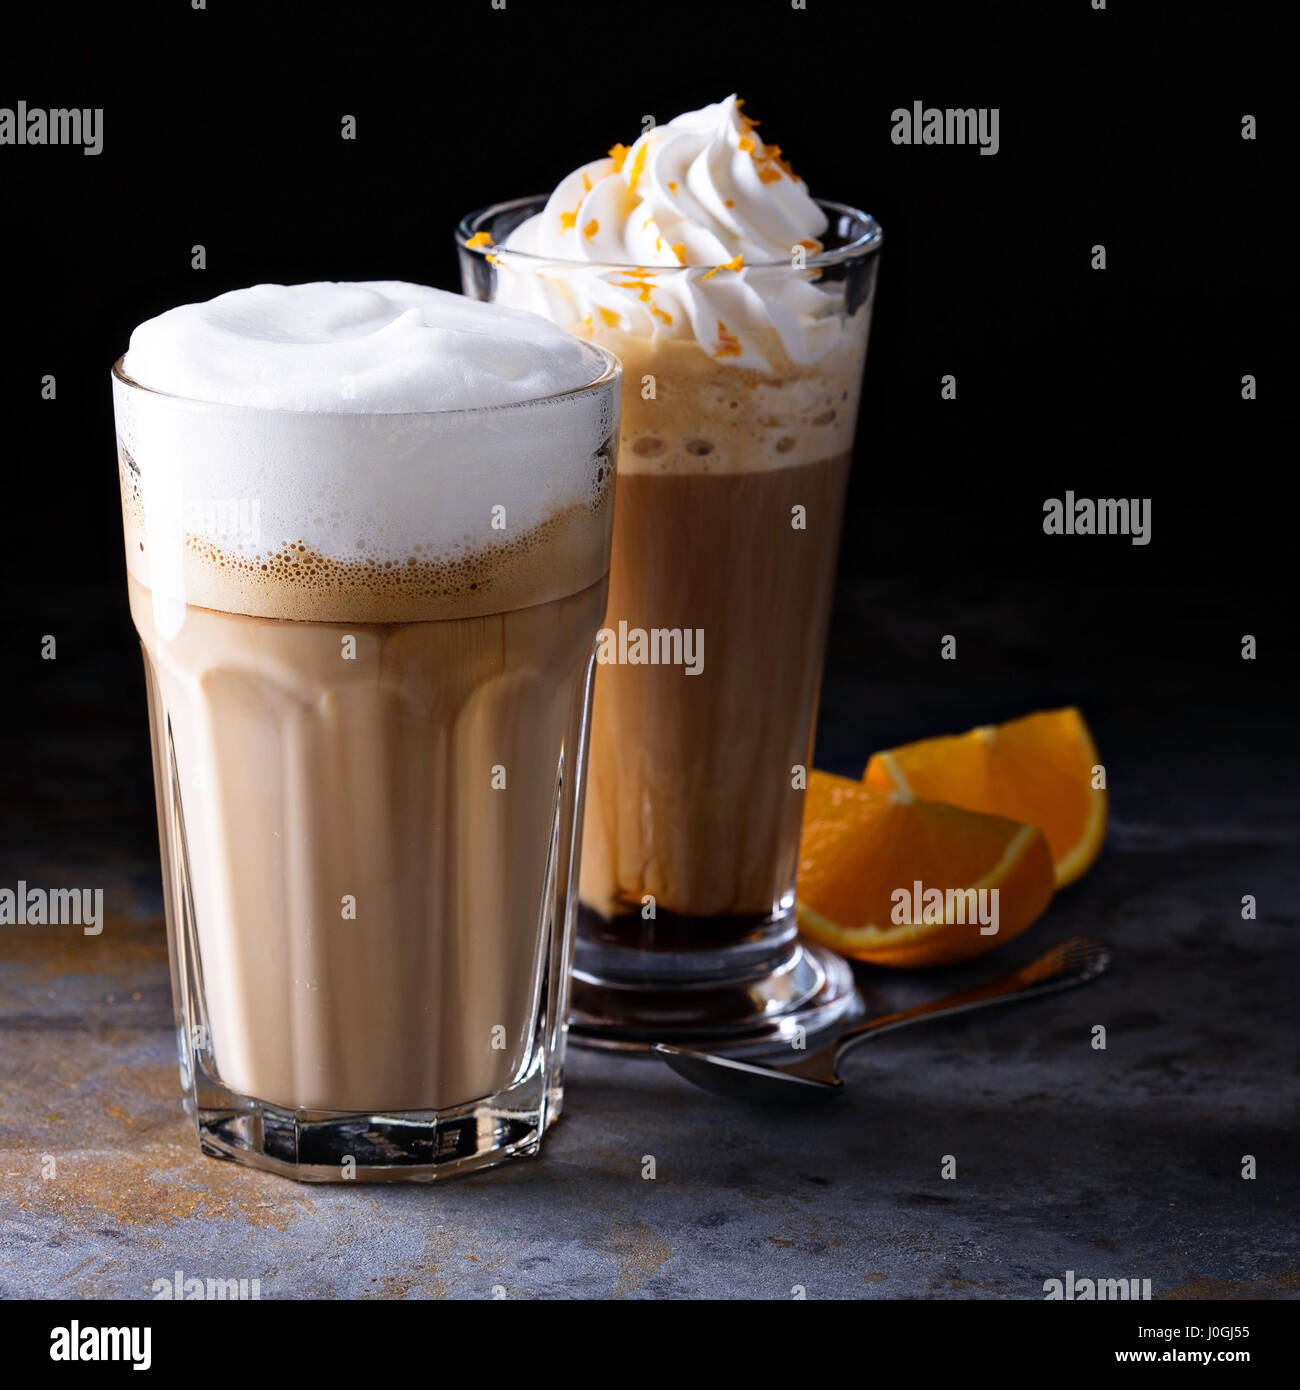 Wiener Kaffee mit Schlagsahne und Kaffee latte Stockfotografie - Alamy